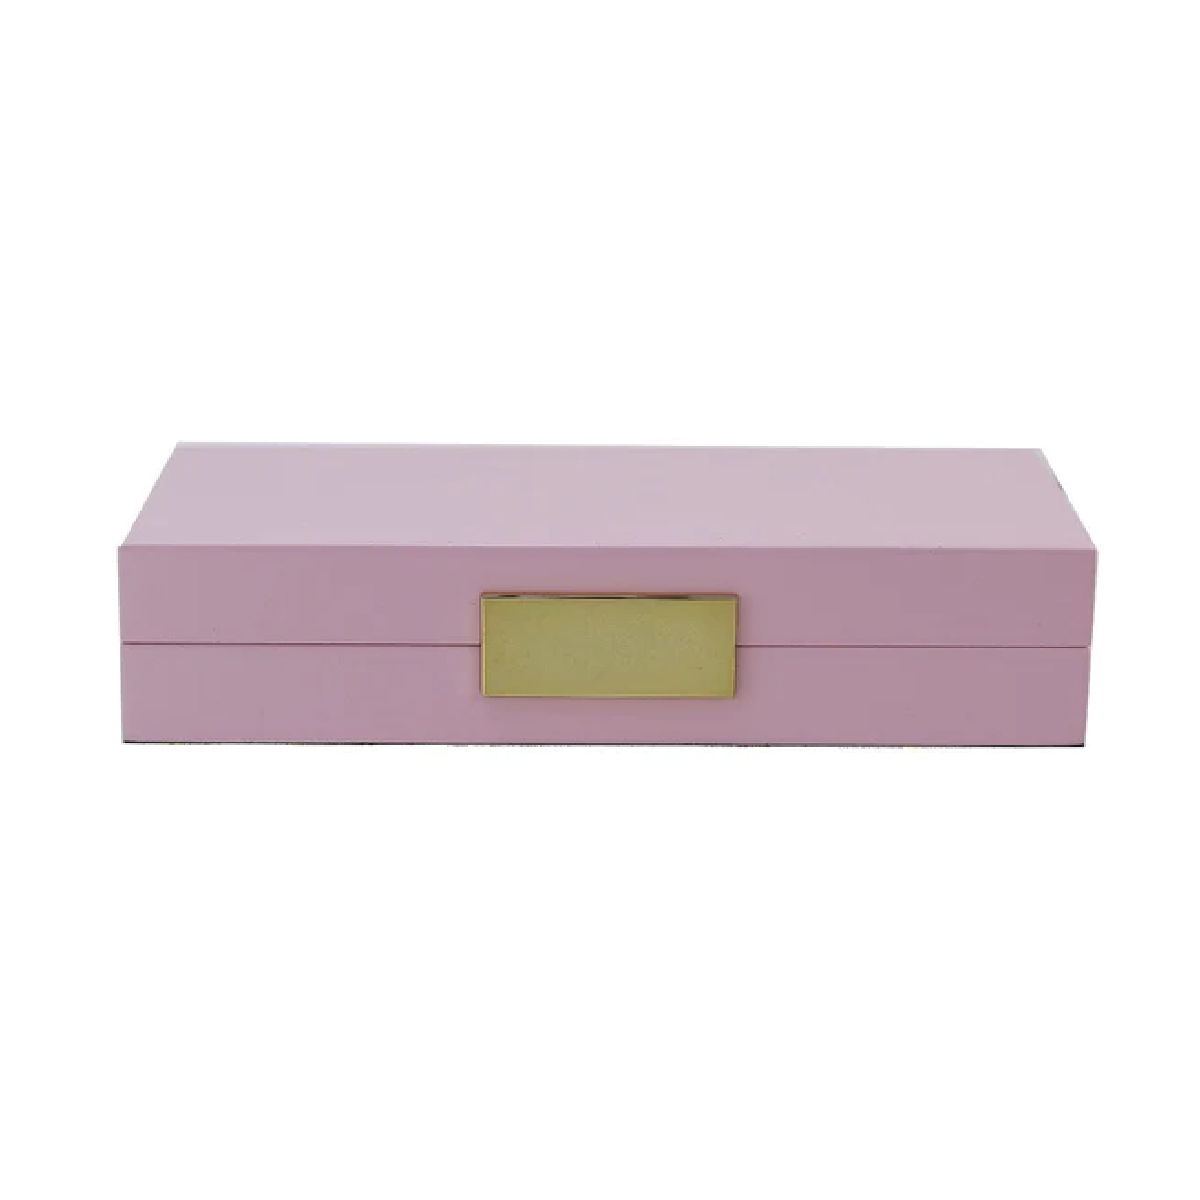 Addison Ross - Pink & Gold Jewlery Box